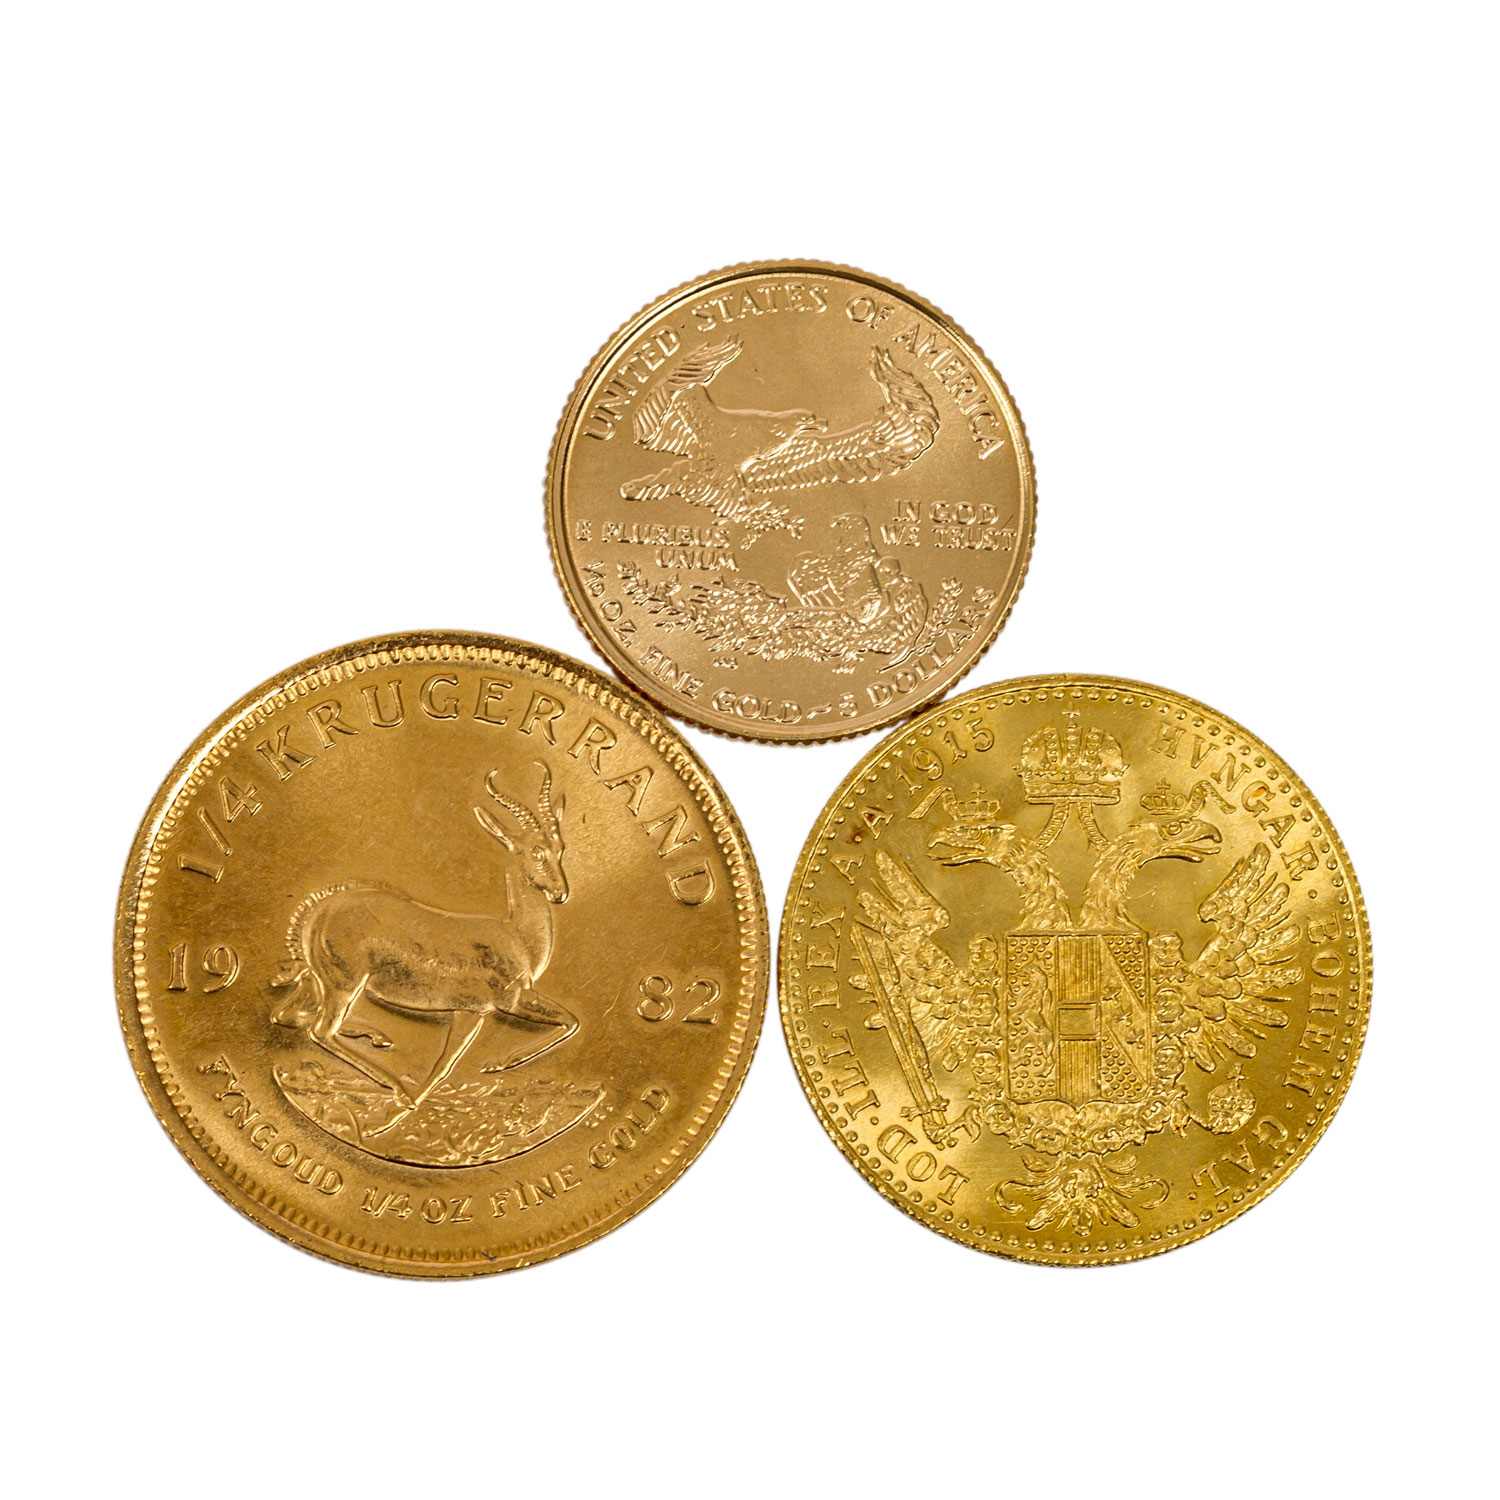 3 GOLDmünzen - 1/4 Unze Krügerrand 1982, 1 Dukat 1915 NP sowie 1/10 Unze Eagle 1999. Erhaltungen - Bild 2 aus 2